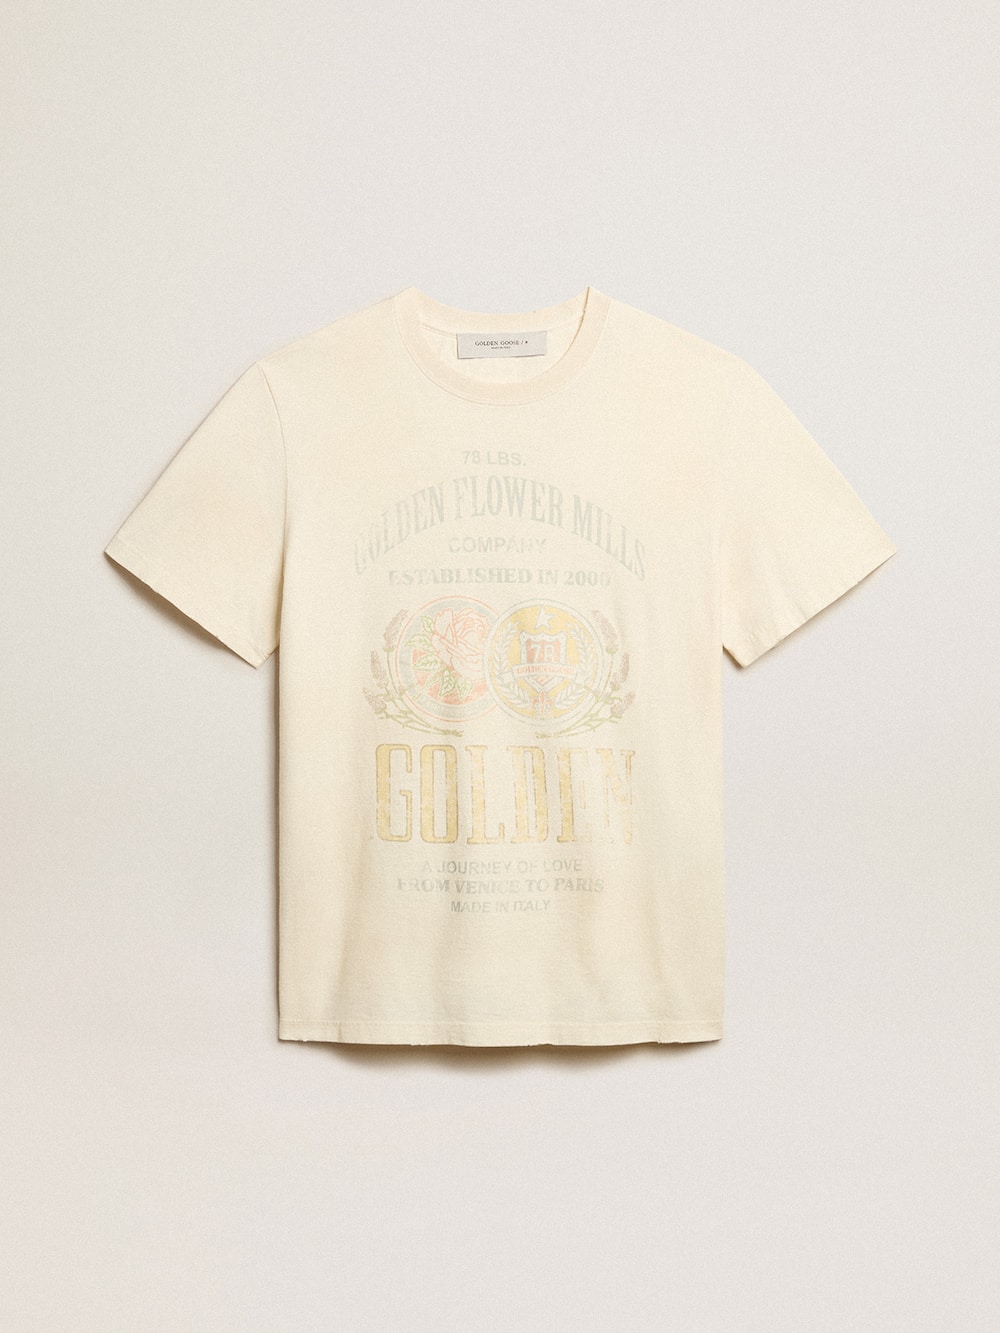 Golden Goose - T-Shirt da uomo in cotone color bianco vissuto con stampa sul davanti in 